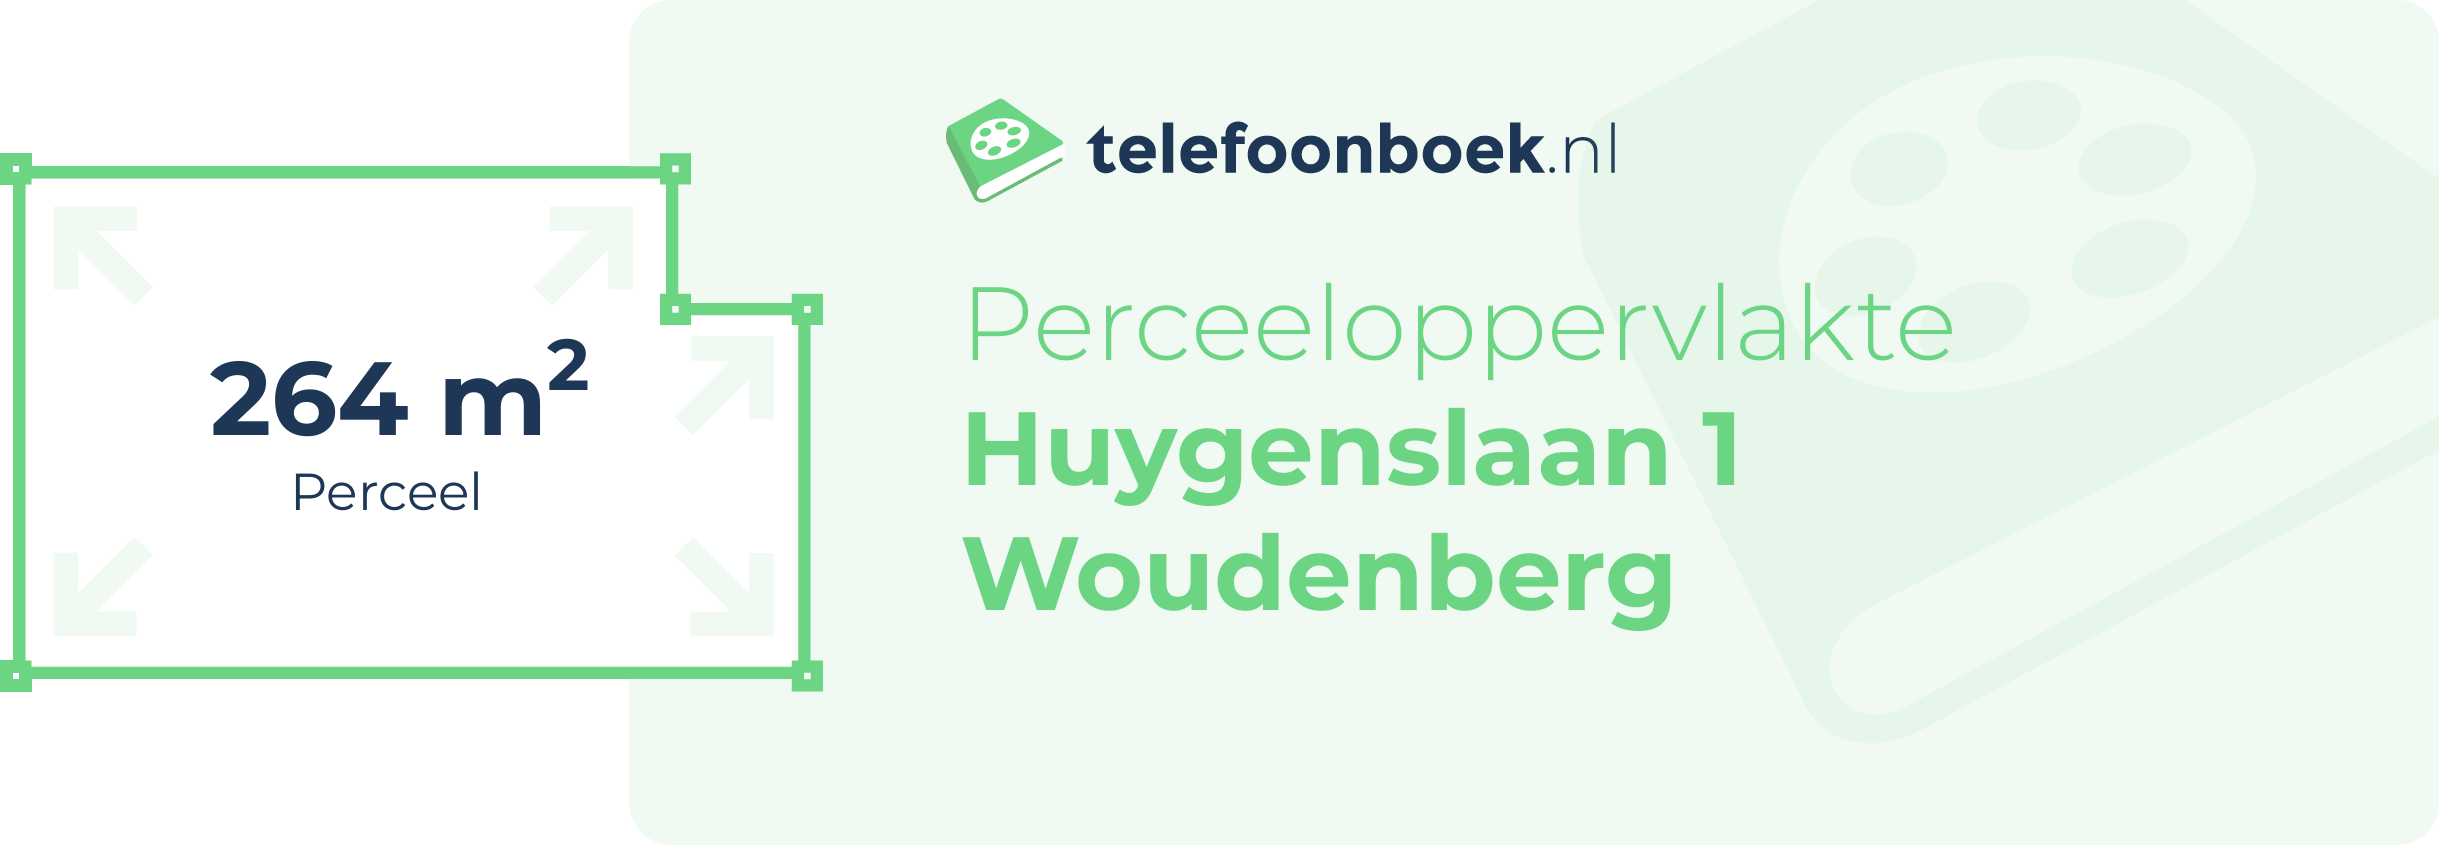 Perceeloppervlakte Huygenslaan 1 Woudenberg